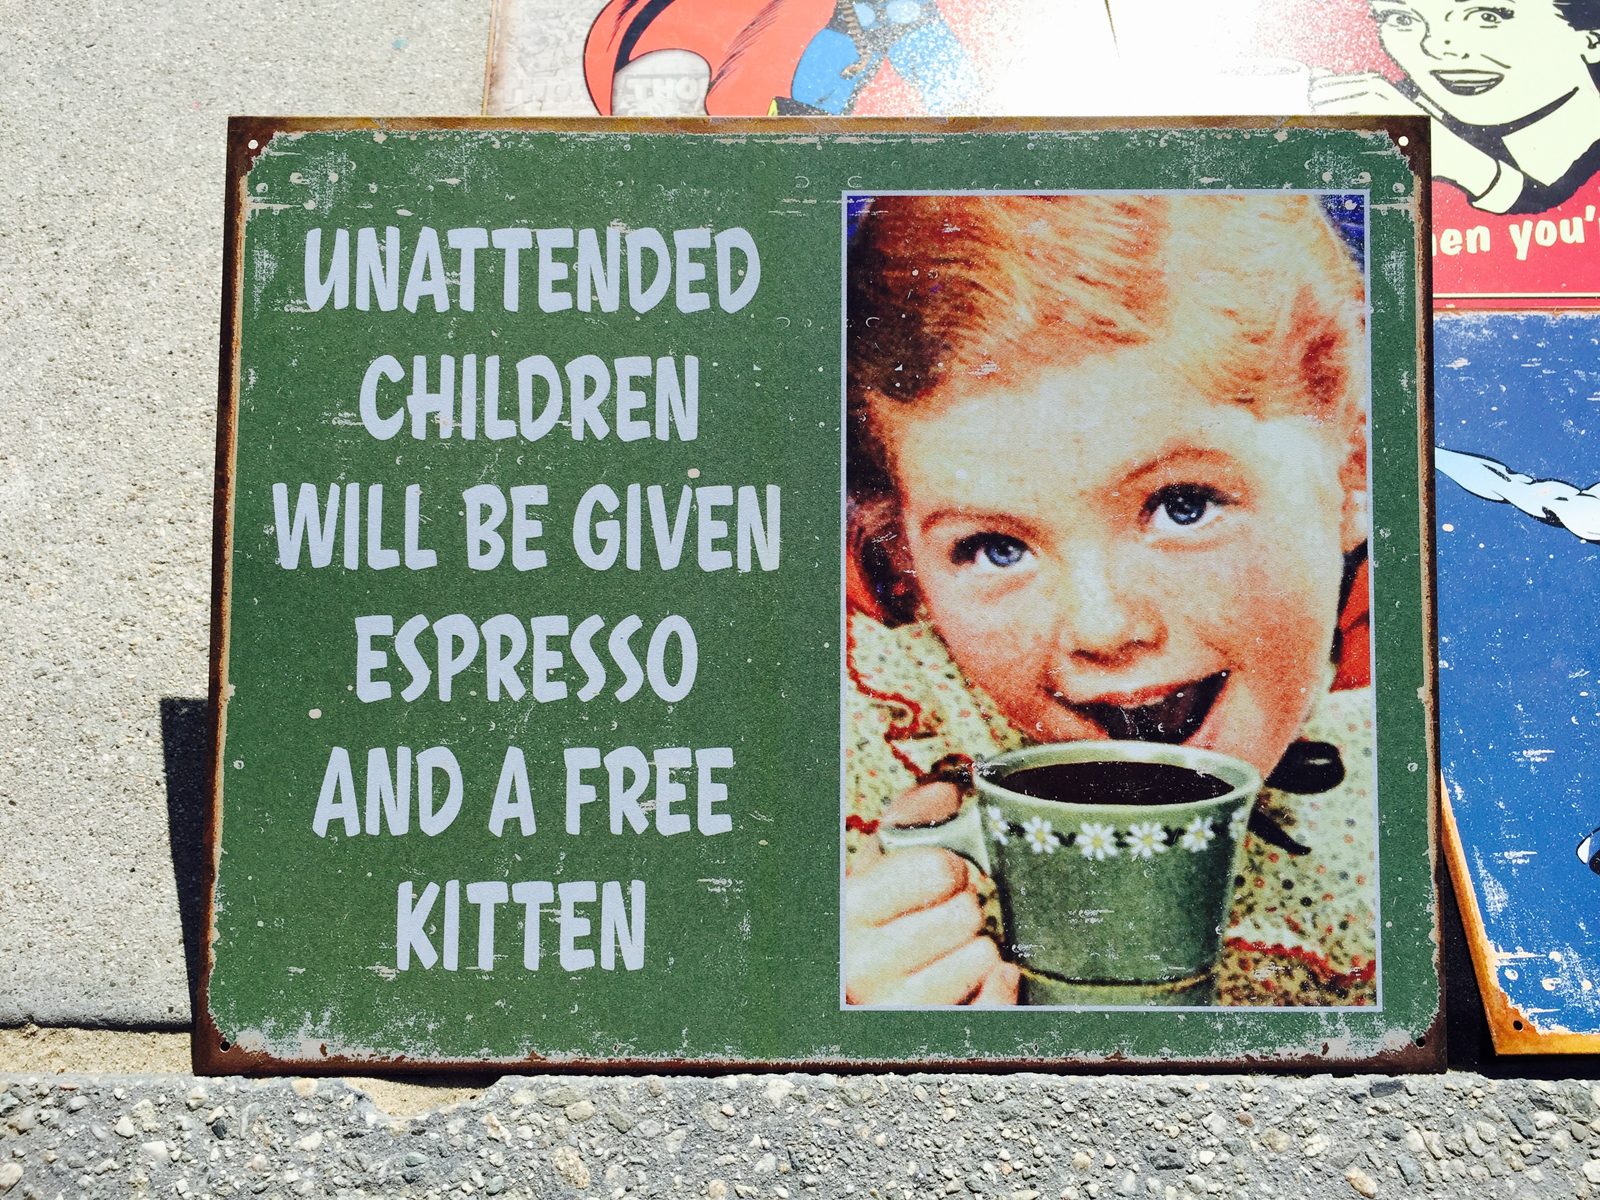 In Amerika bekommen unbeaufsichtigte Kinder einen Espresso und ein Katzenjunges dazu. Die Aufschrift stimmt natürlich nicht – aber das Abenteuer unsere Papabloggers wird grossartig. Foto: Ronaldo Dieziger